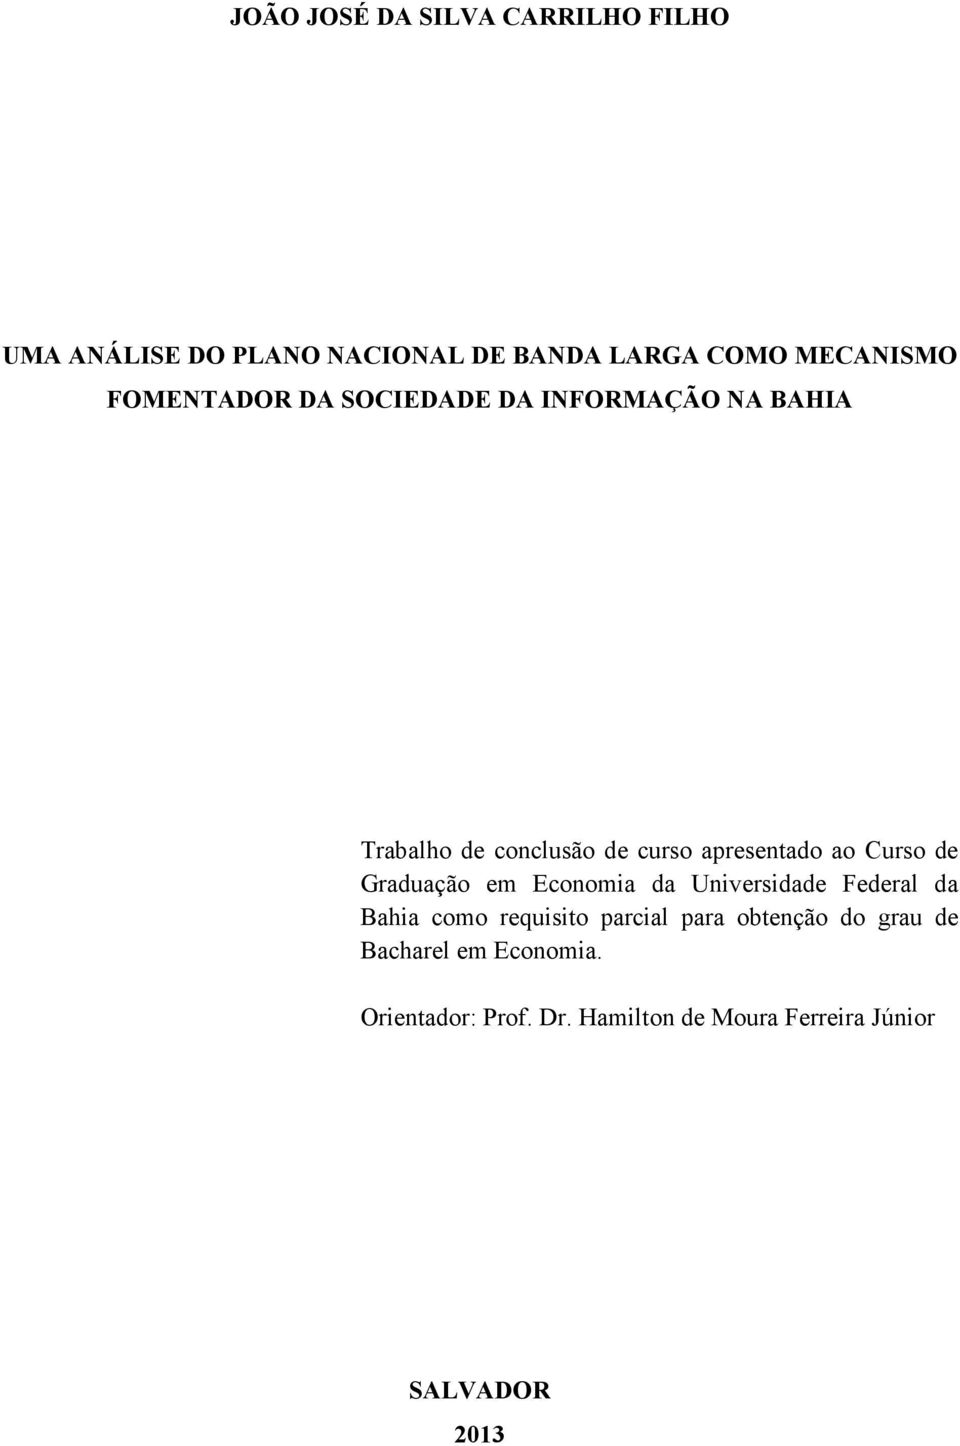 Curso de Graduação em Economia da Universidade Federal da Bahia como requisito parcial para